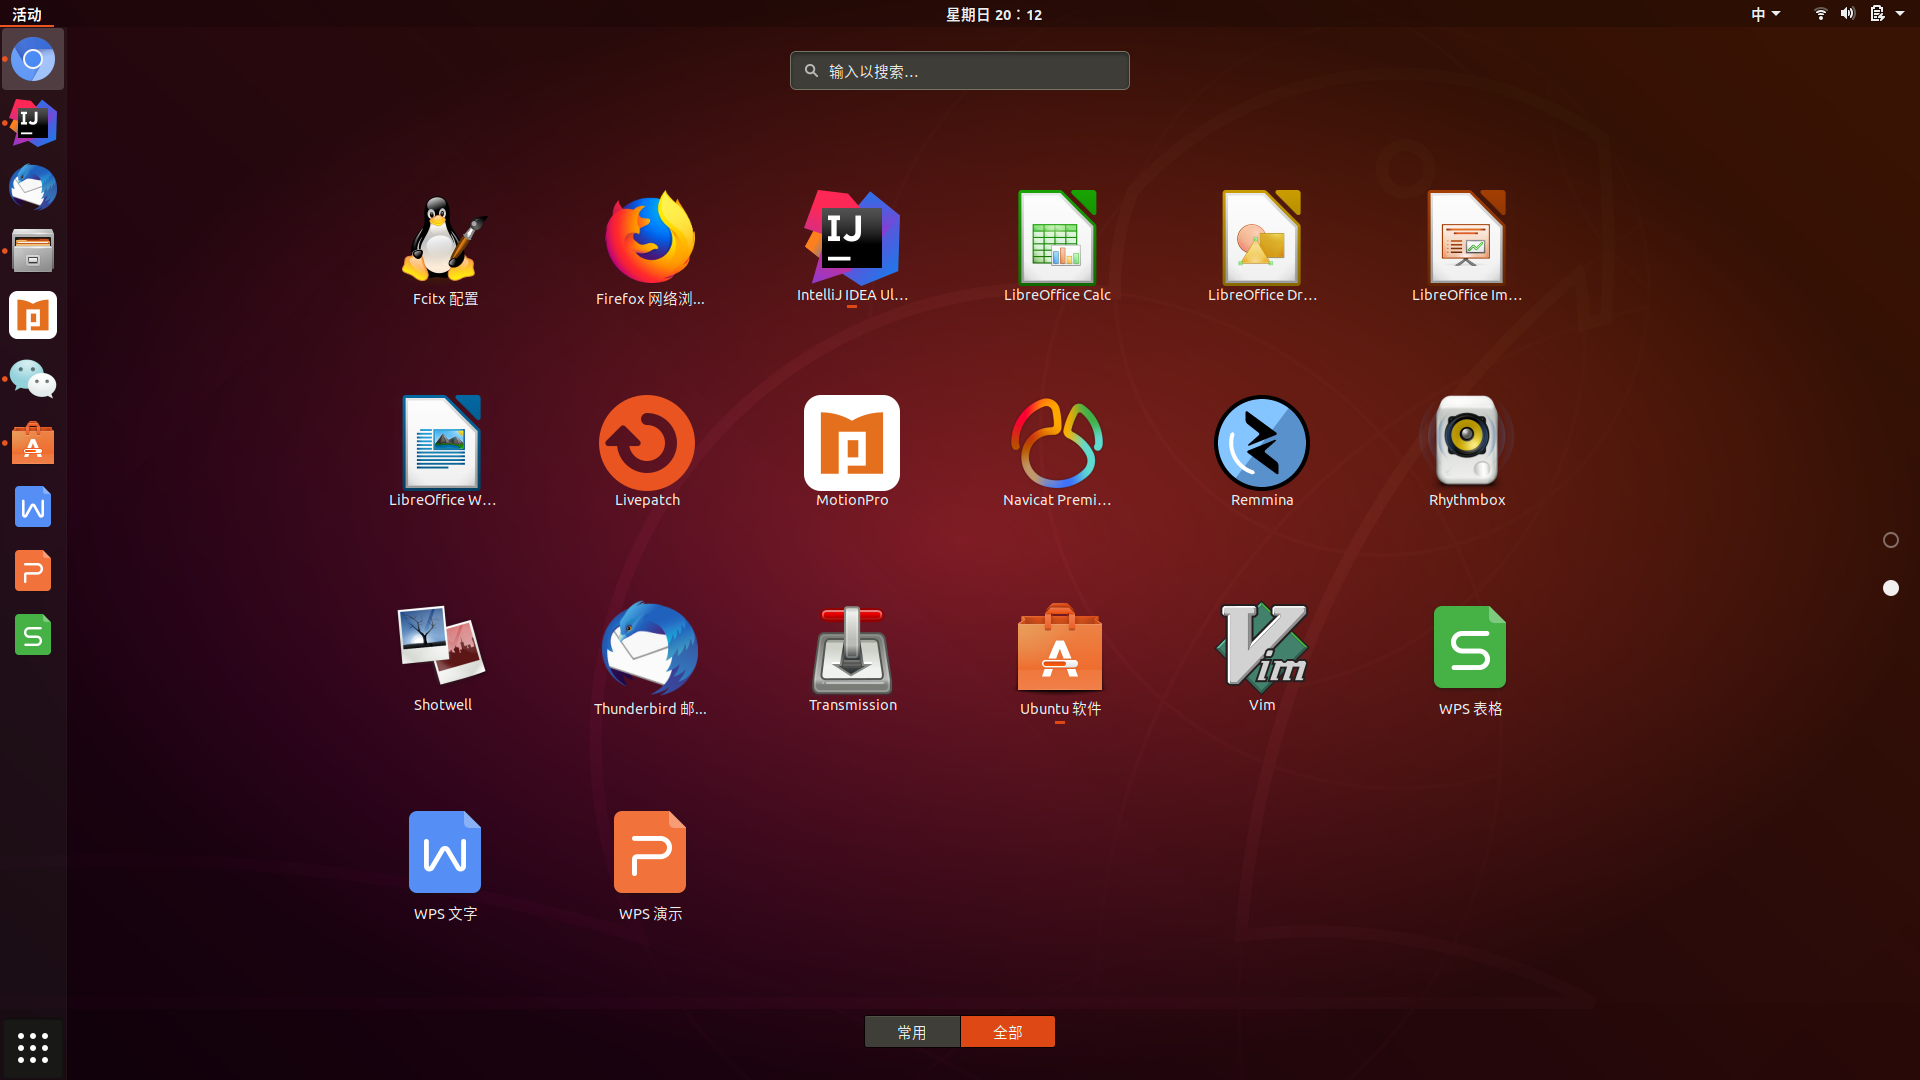 install navicat ubuntu 20.04